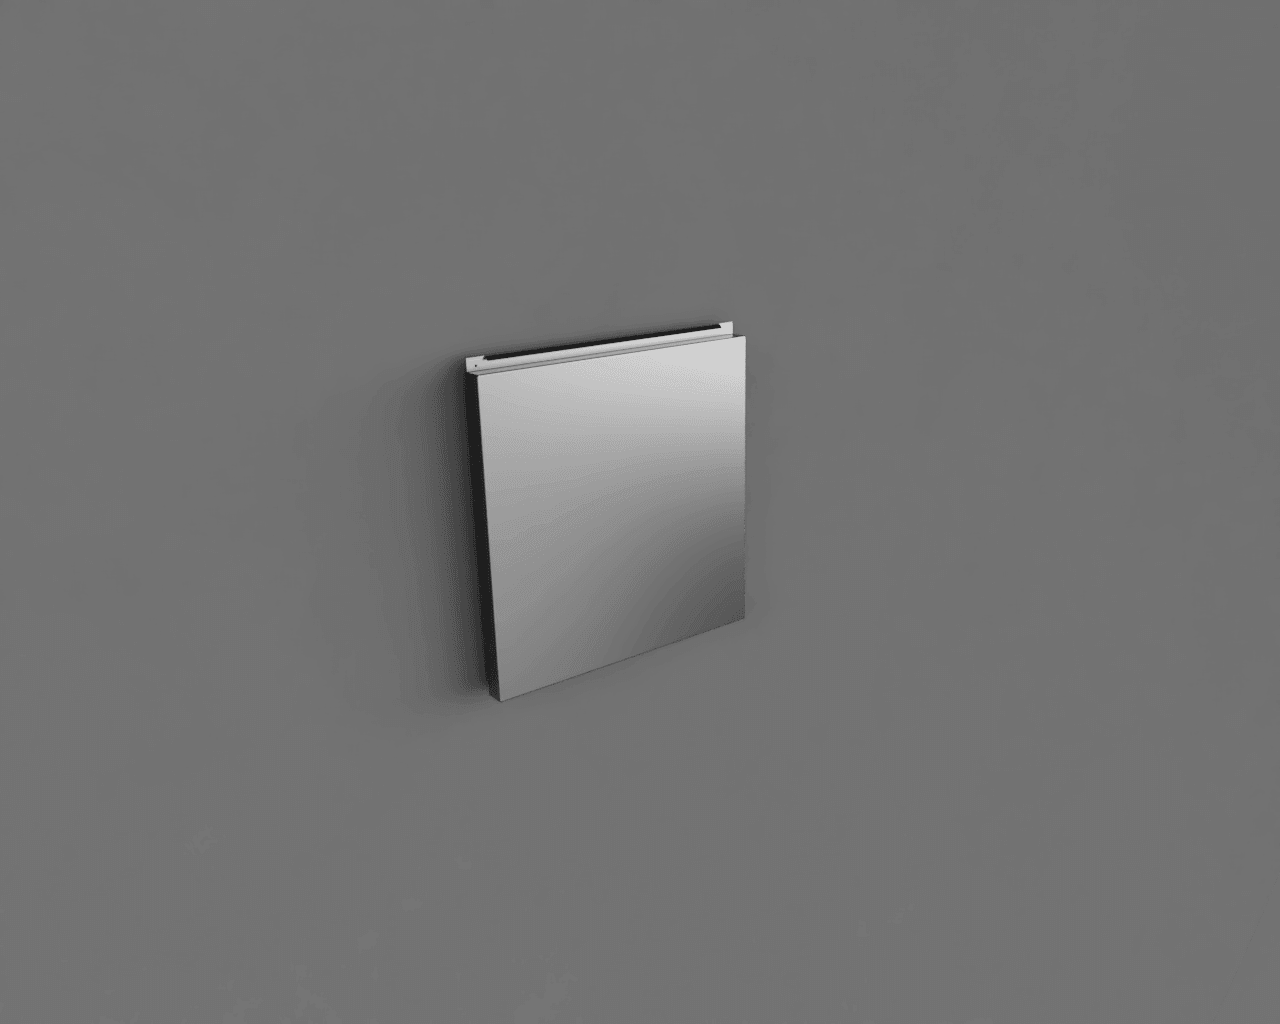 Фасадные кассеты закрытого типа из оцинкованной стали с полимерным покрытием 1160х724, 0,7 ммрендер